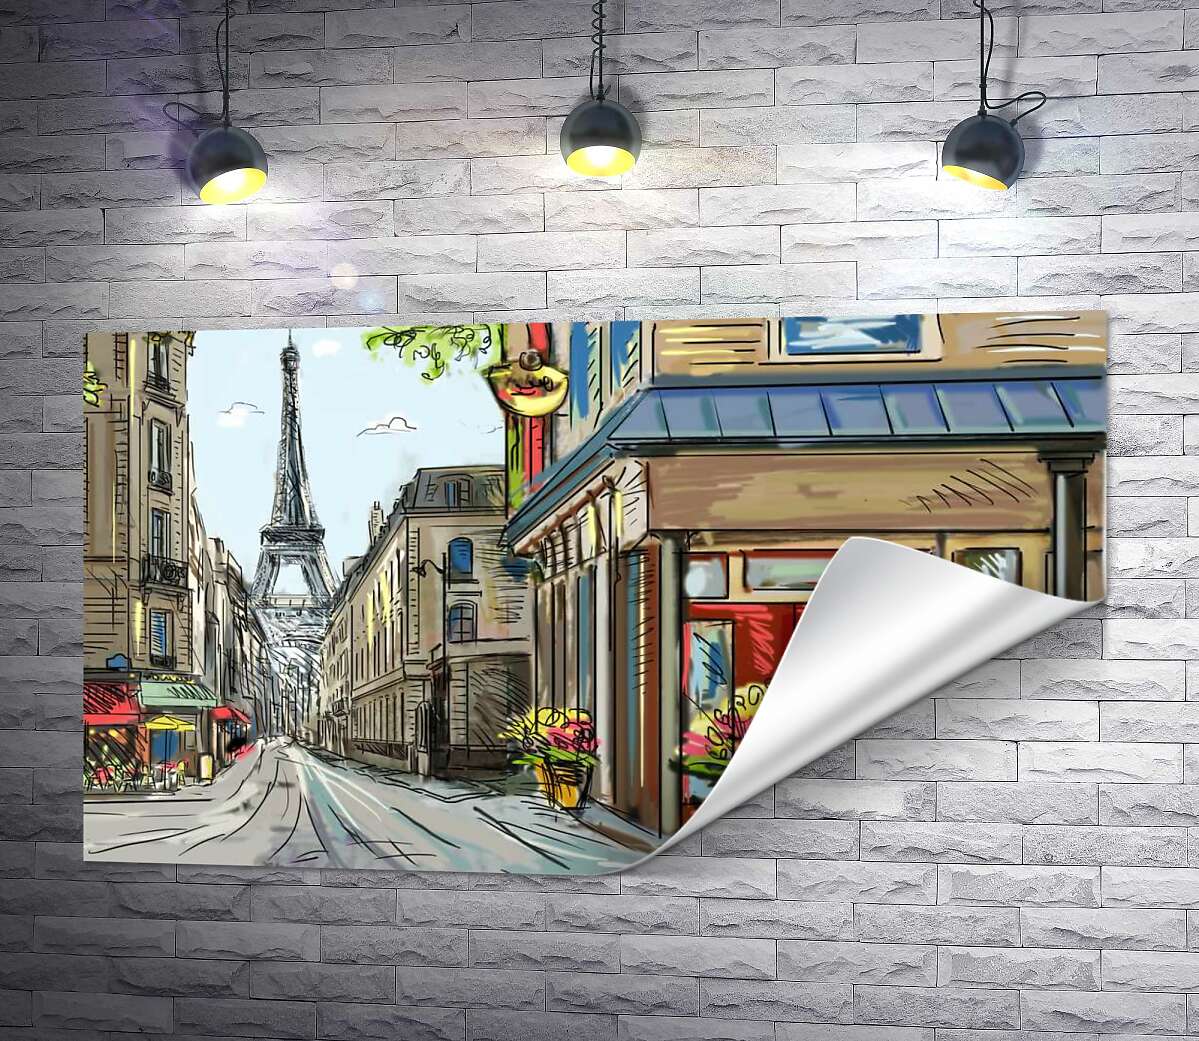 друк Затишна паризька вулиця веде повз квітковий магазинчик до Ейфелевої вежі (Eiffel tower)